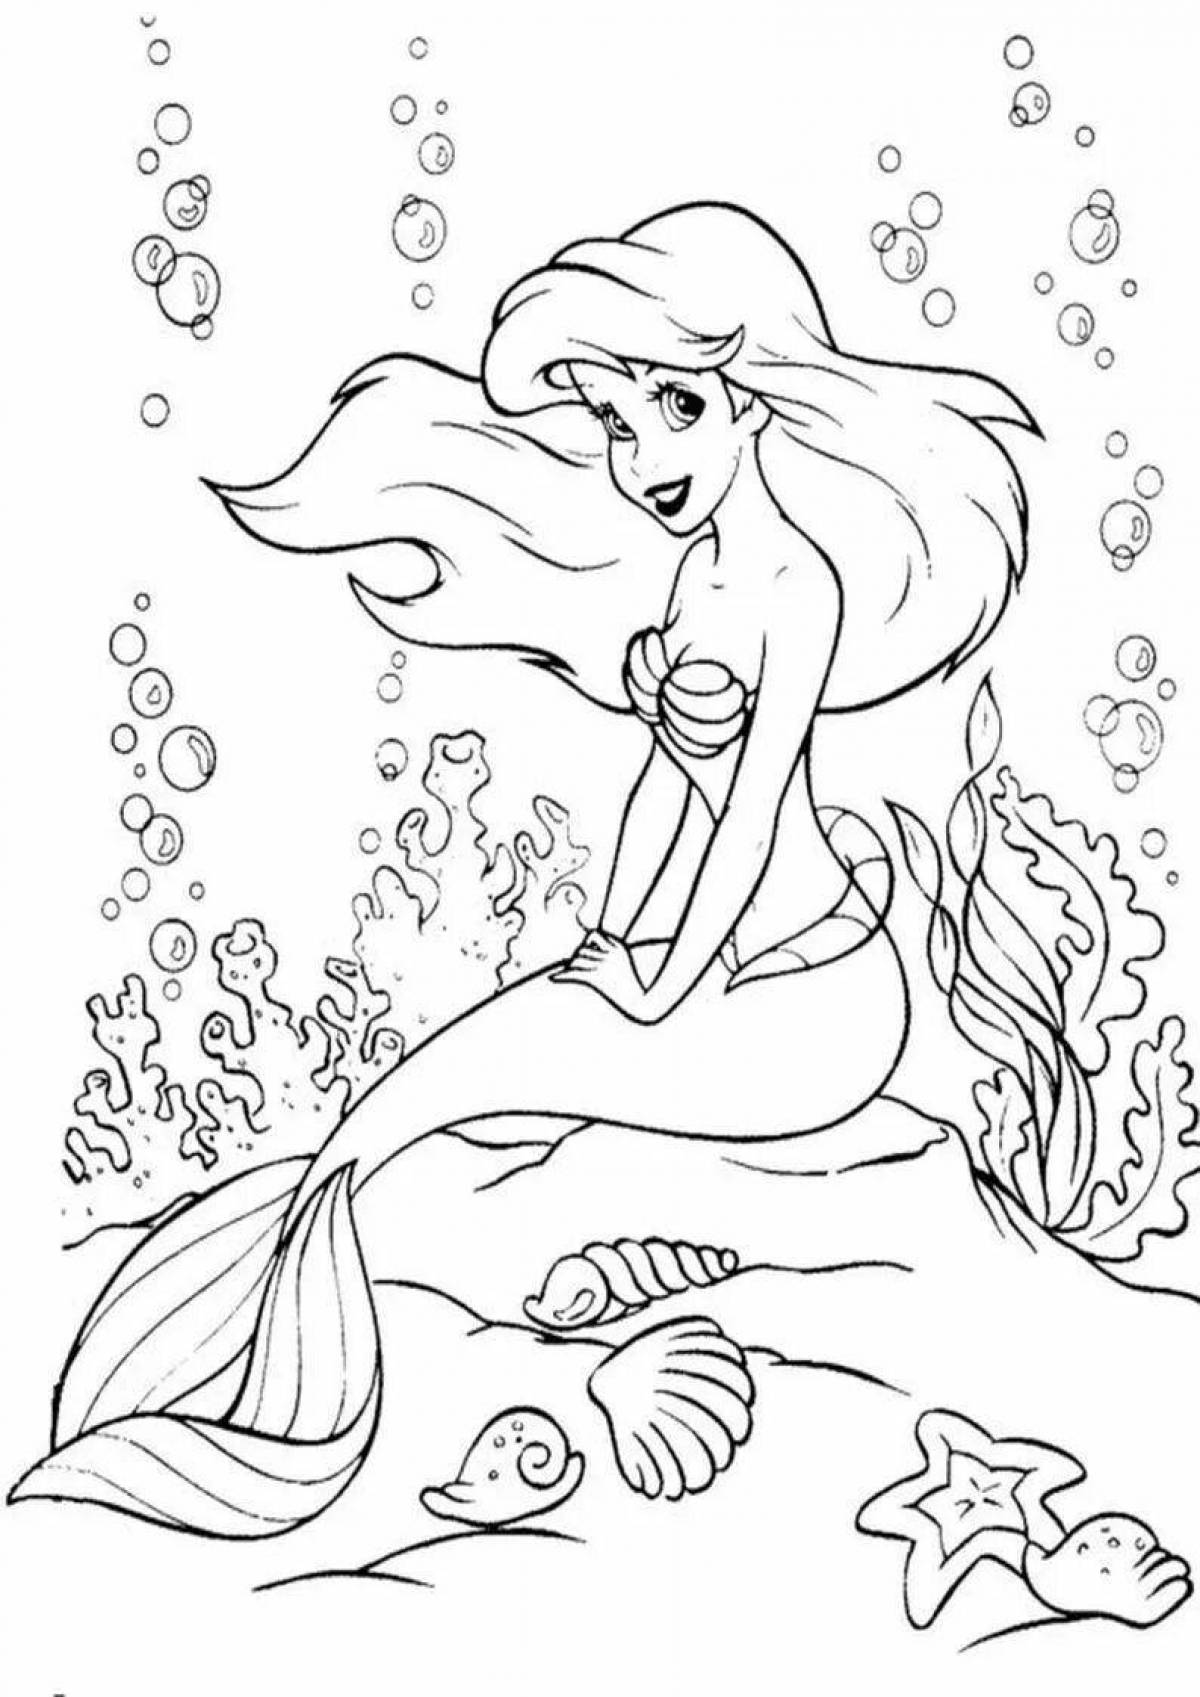 Exquisite mermaid coloring book